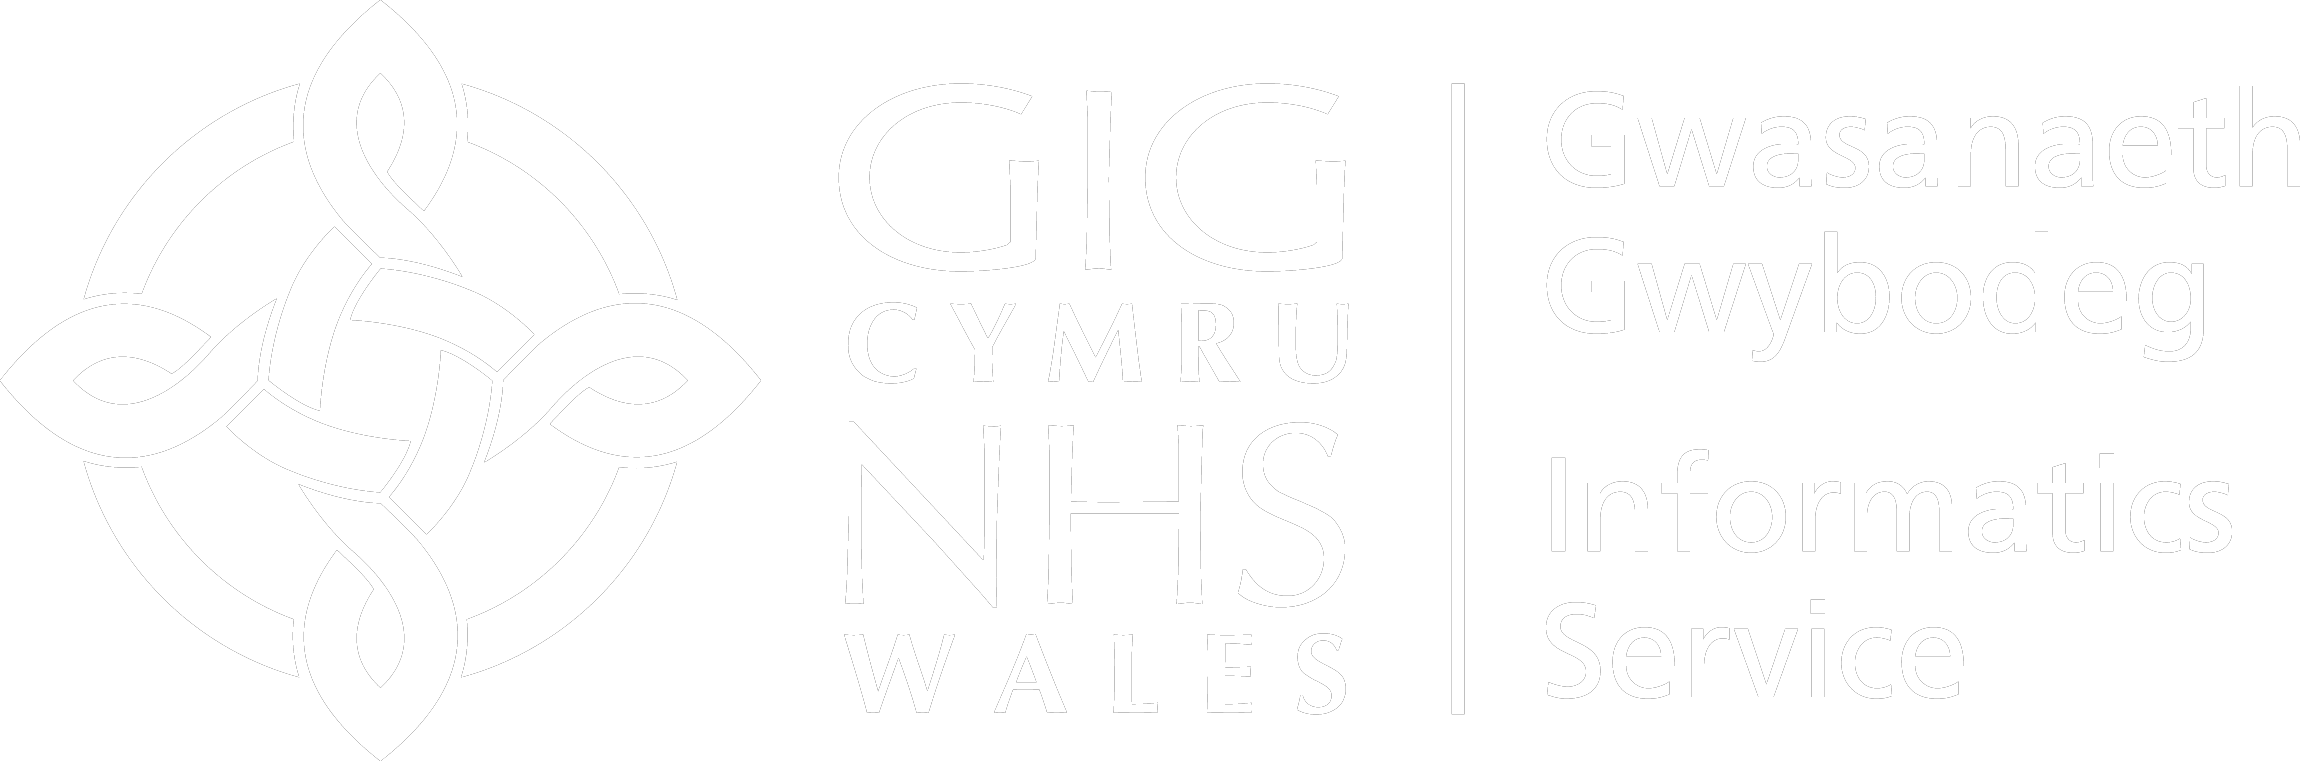 NHS Wales Informatics Service